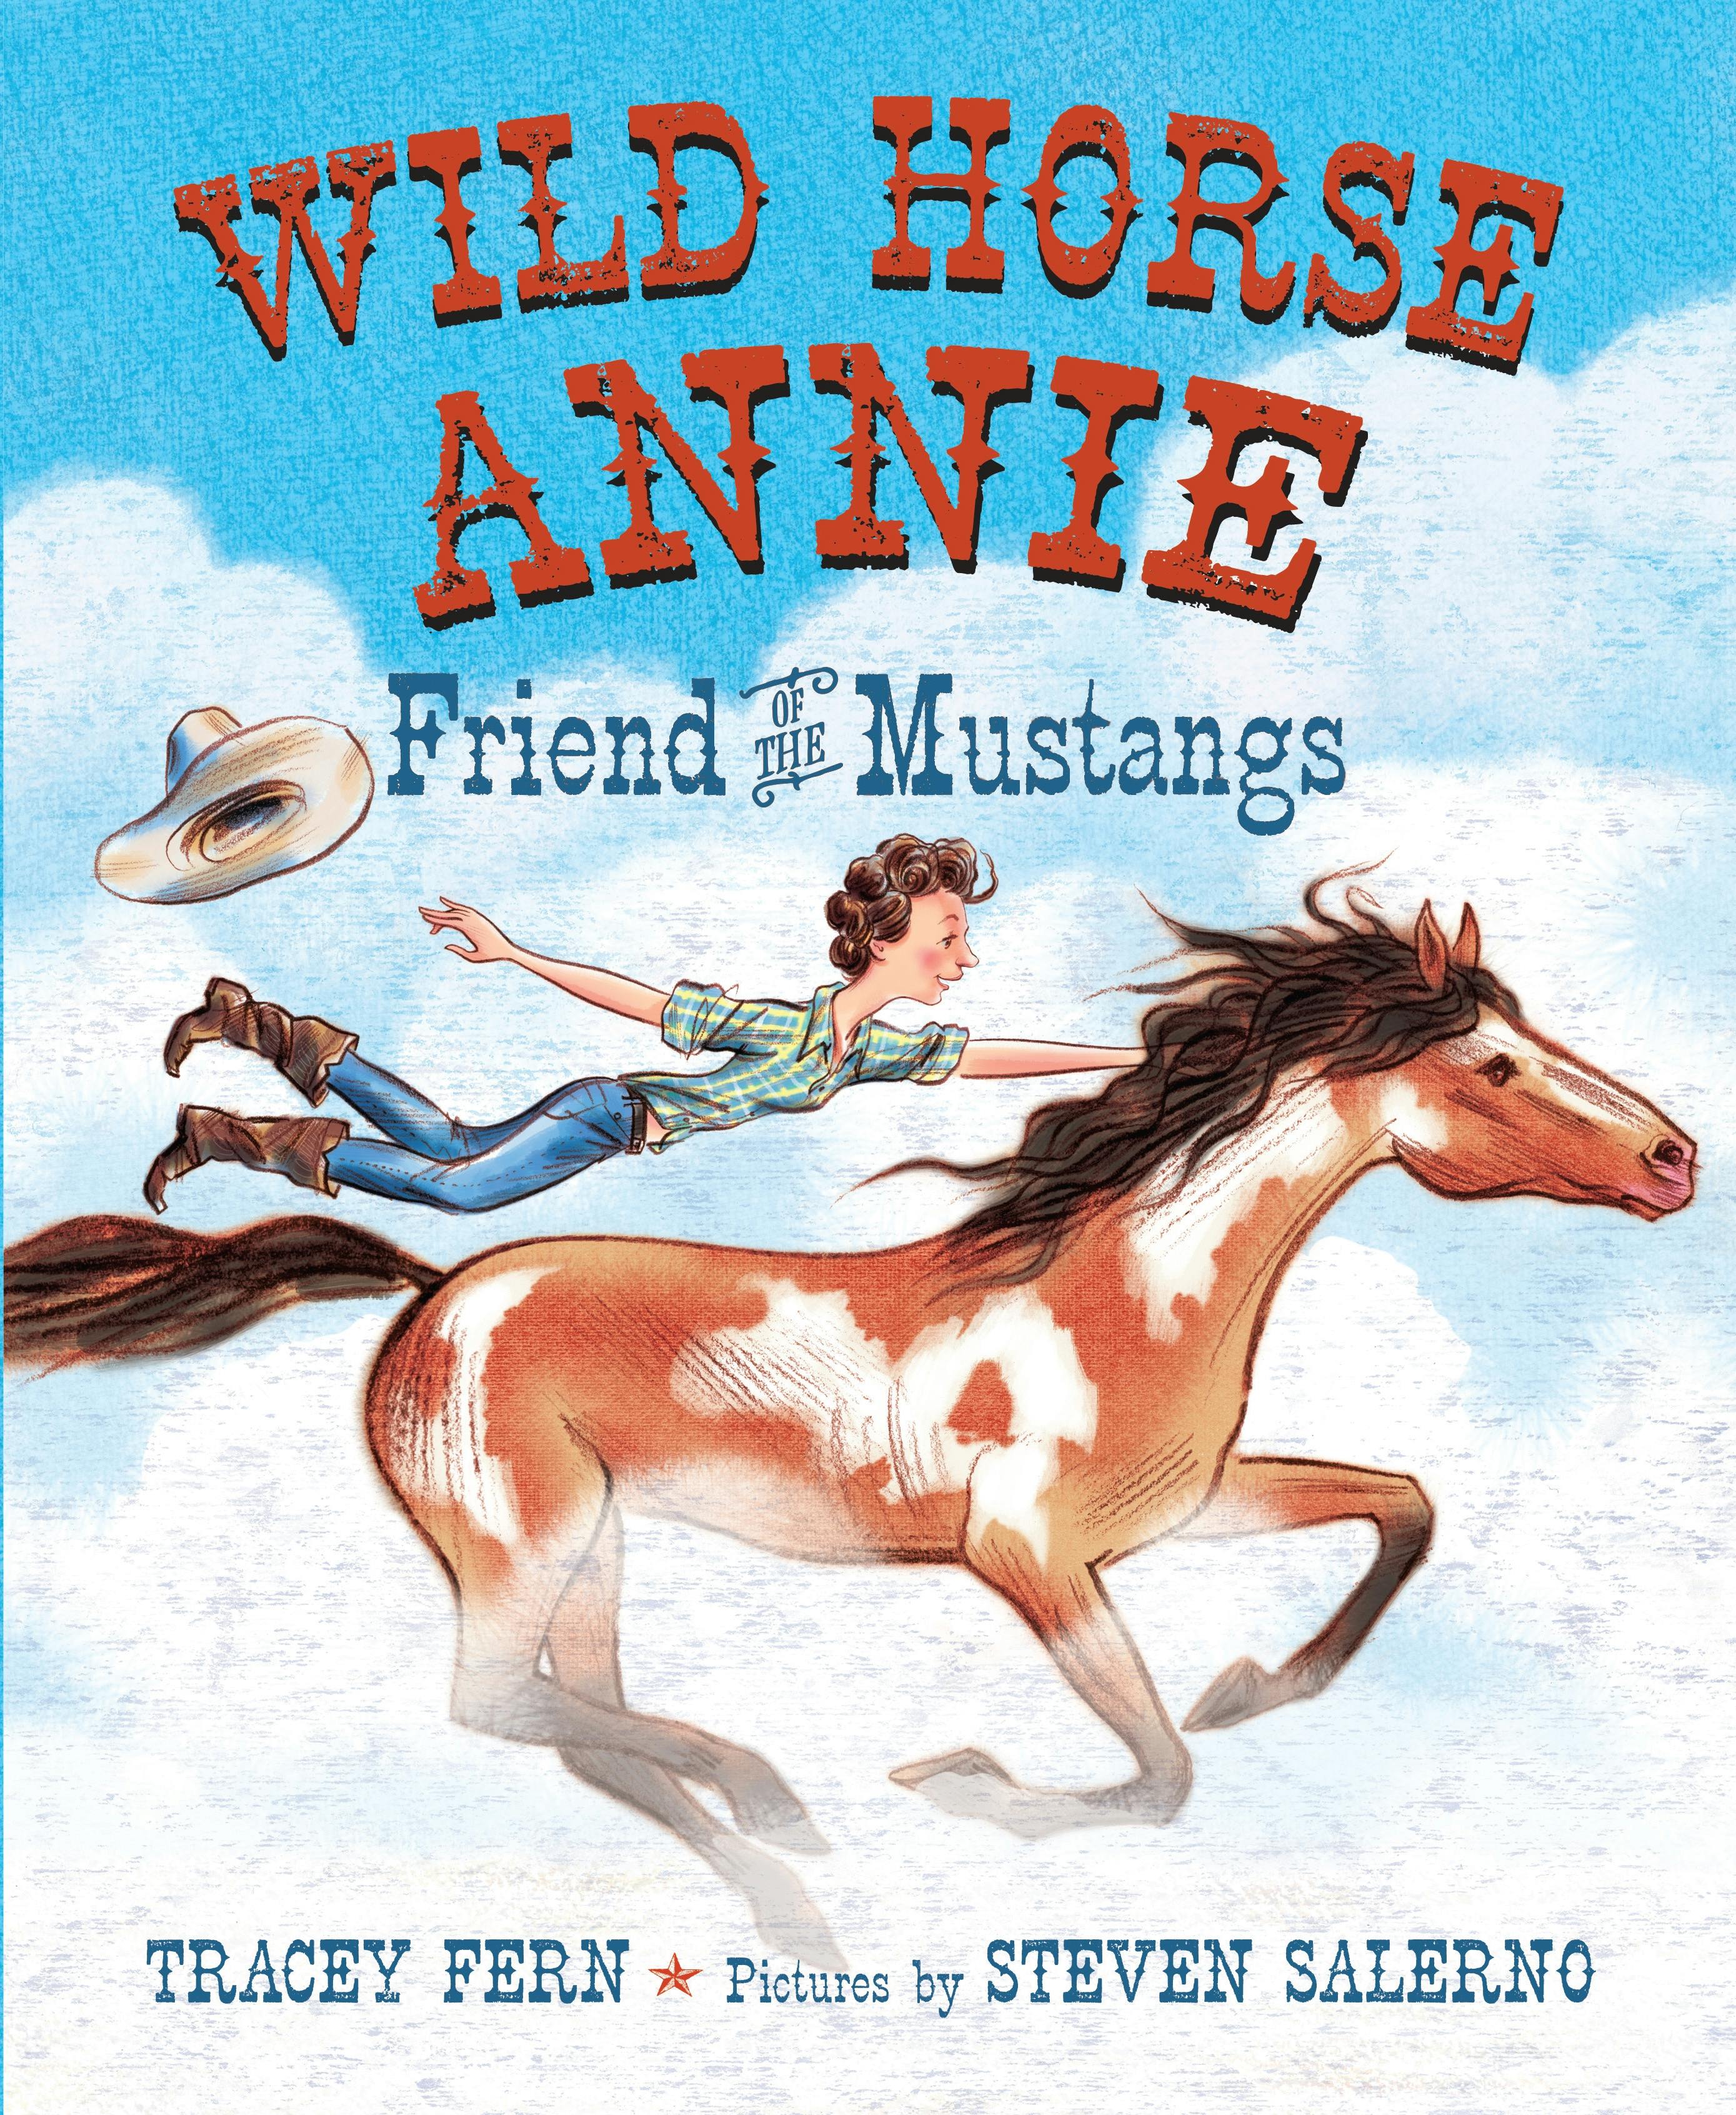 Wild Horse Annie